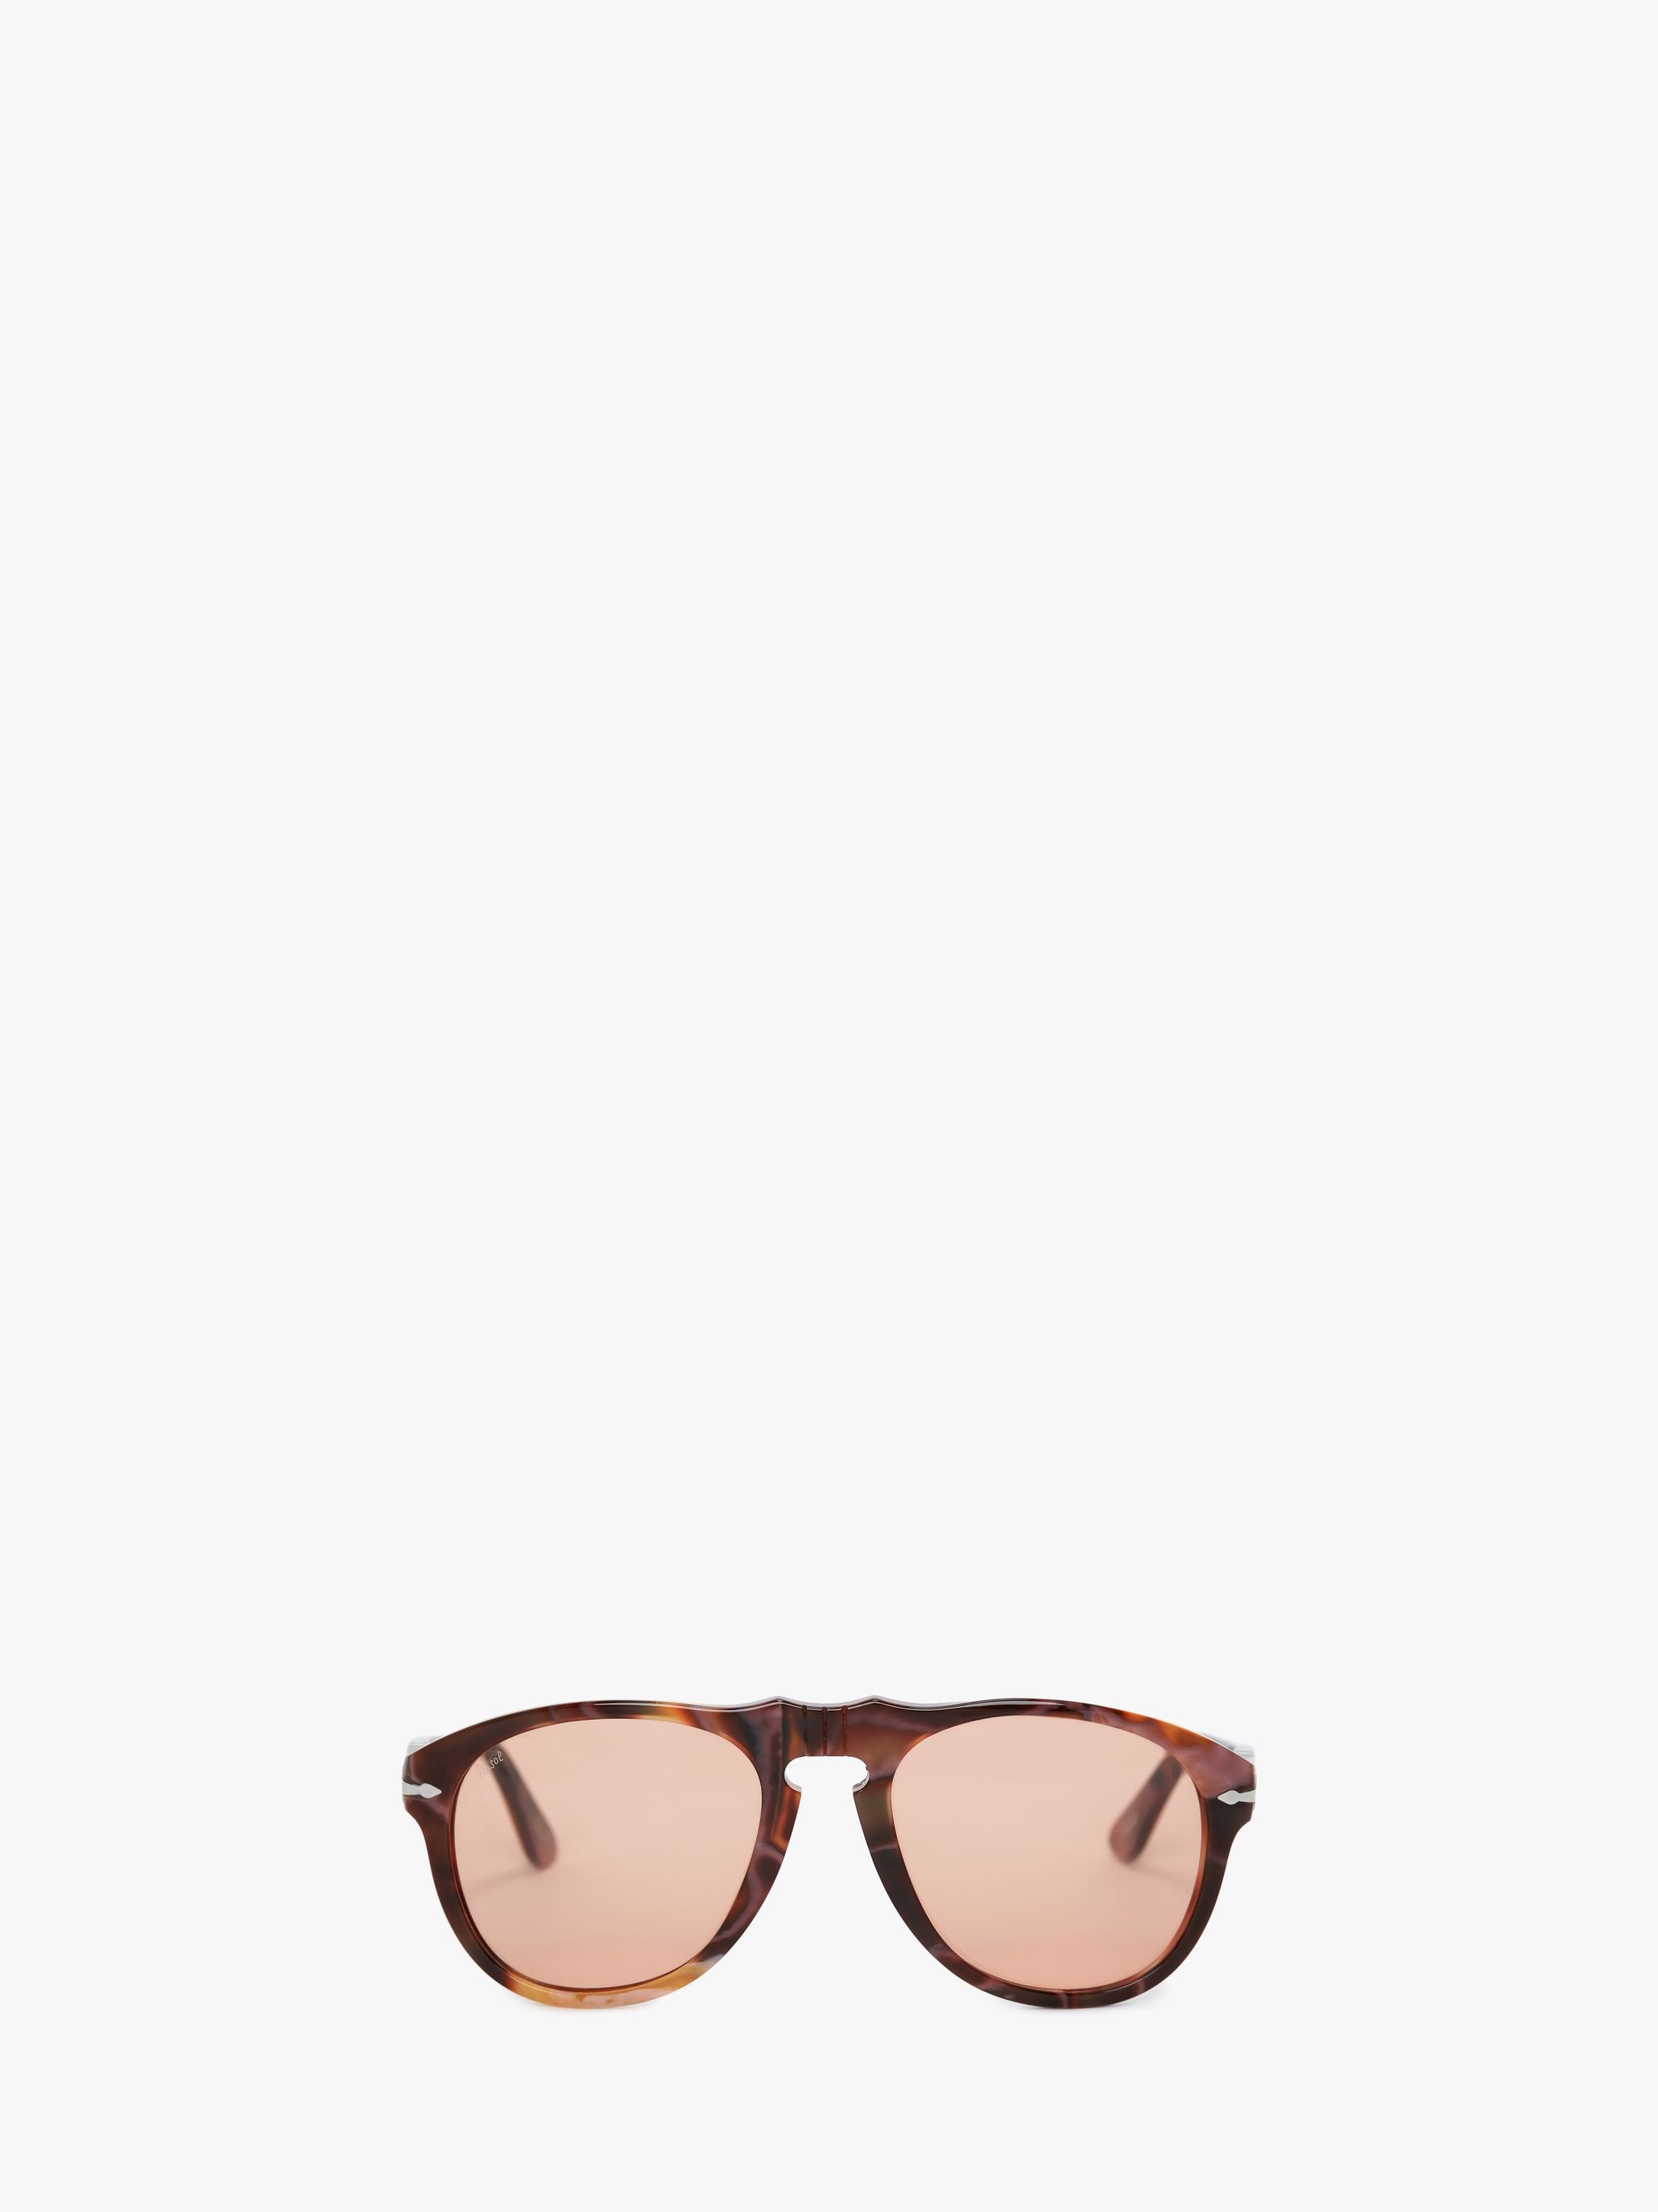 Солнцезащитные очки - авиатор JW Anderson, коричневый солнцезащитные очки invu авиаторы оправа металл градиентные для женщин голубой